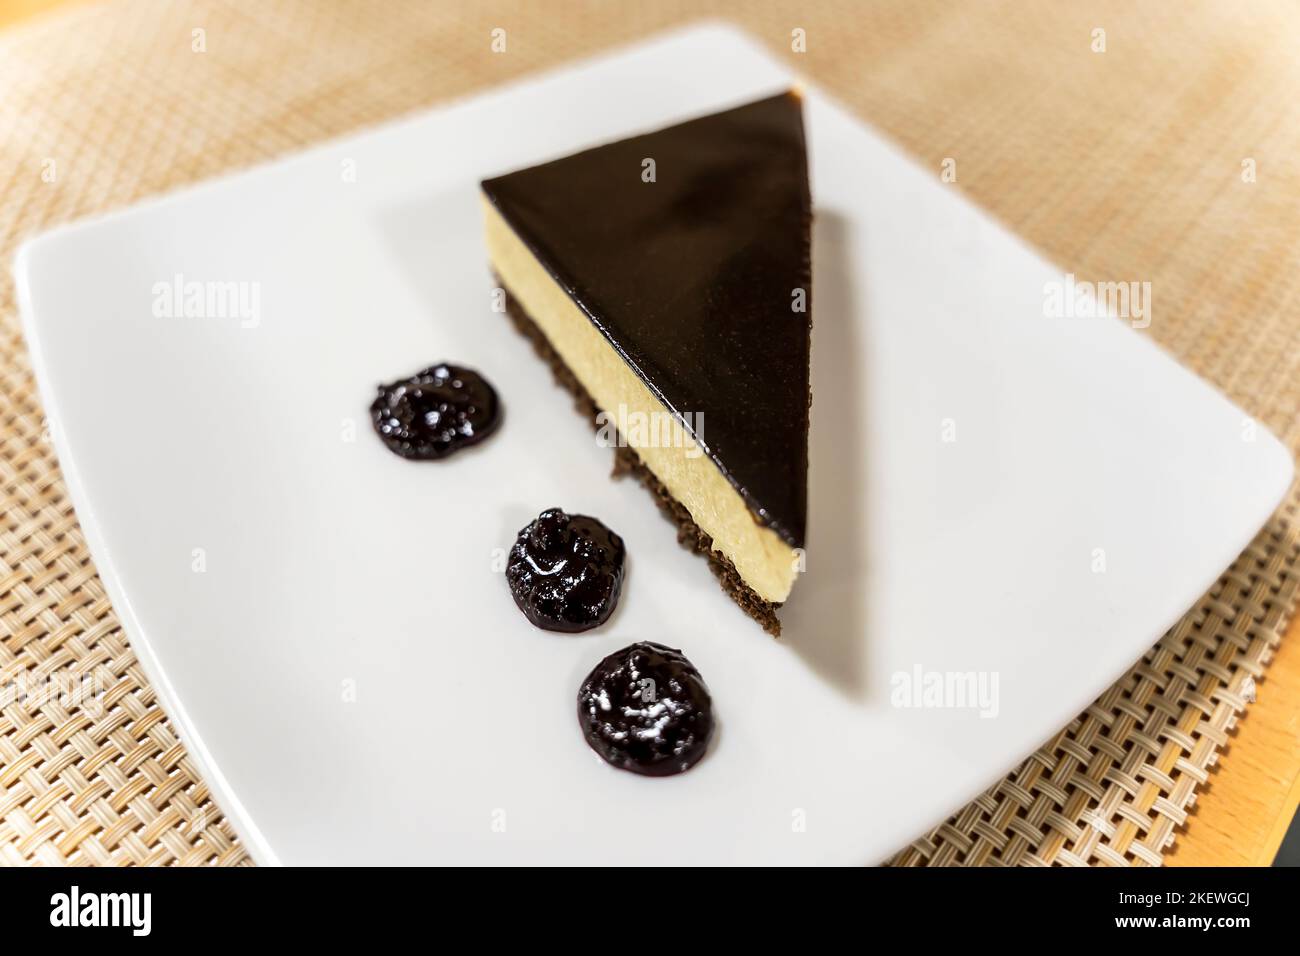 Ein köstliches, wunderschön dekoriertes Stück Kuchen auf einem Teller Stockfoto